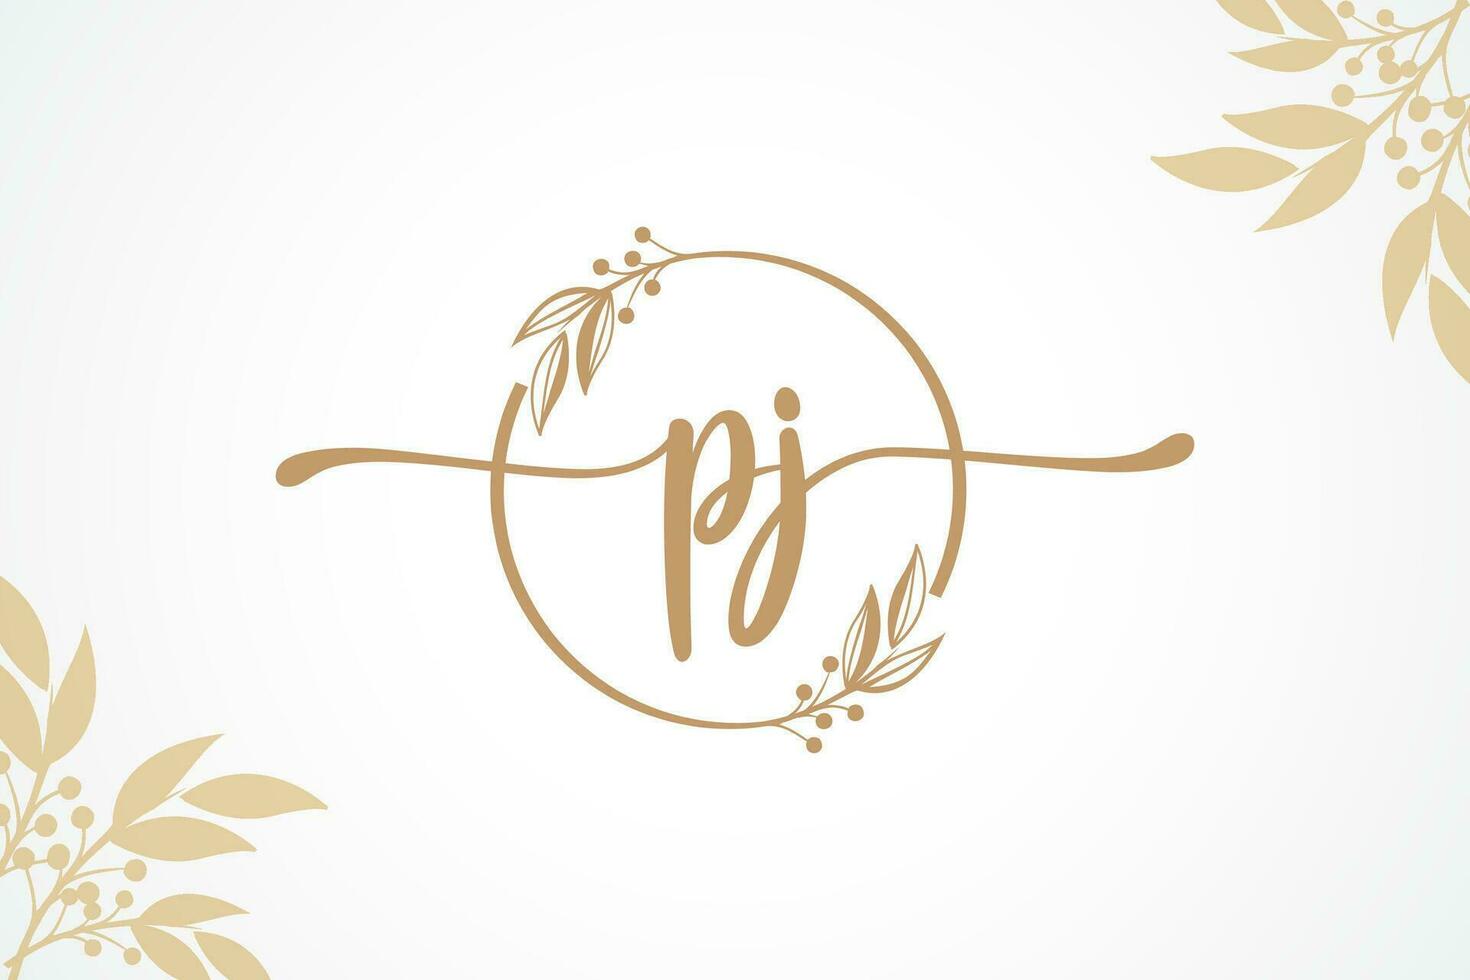 lusso firma iniziale pj logo design isolato foglia e fiore vettore